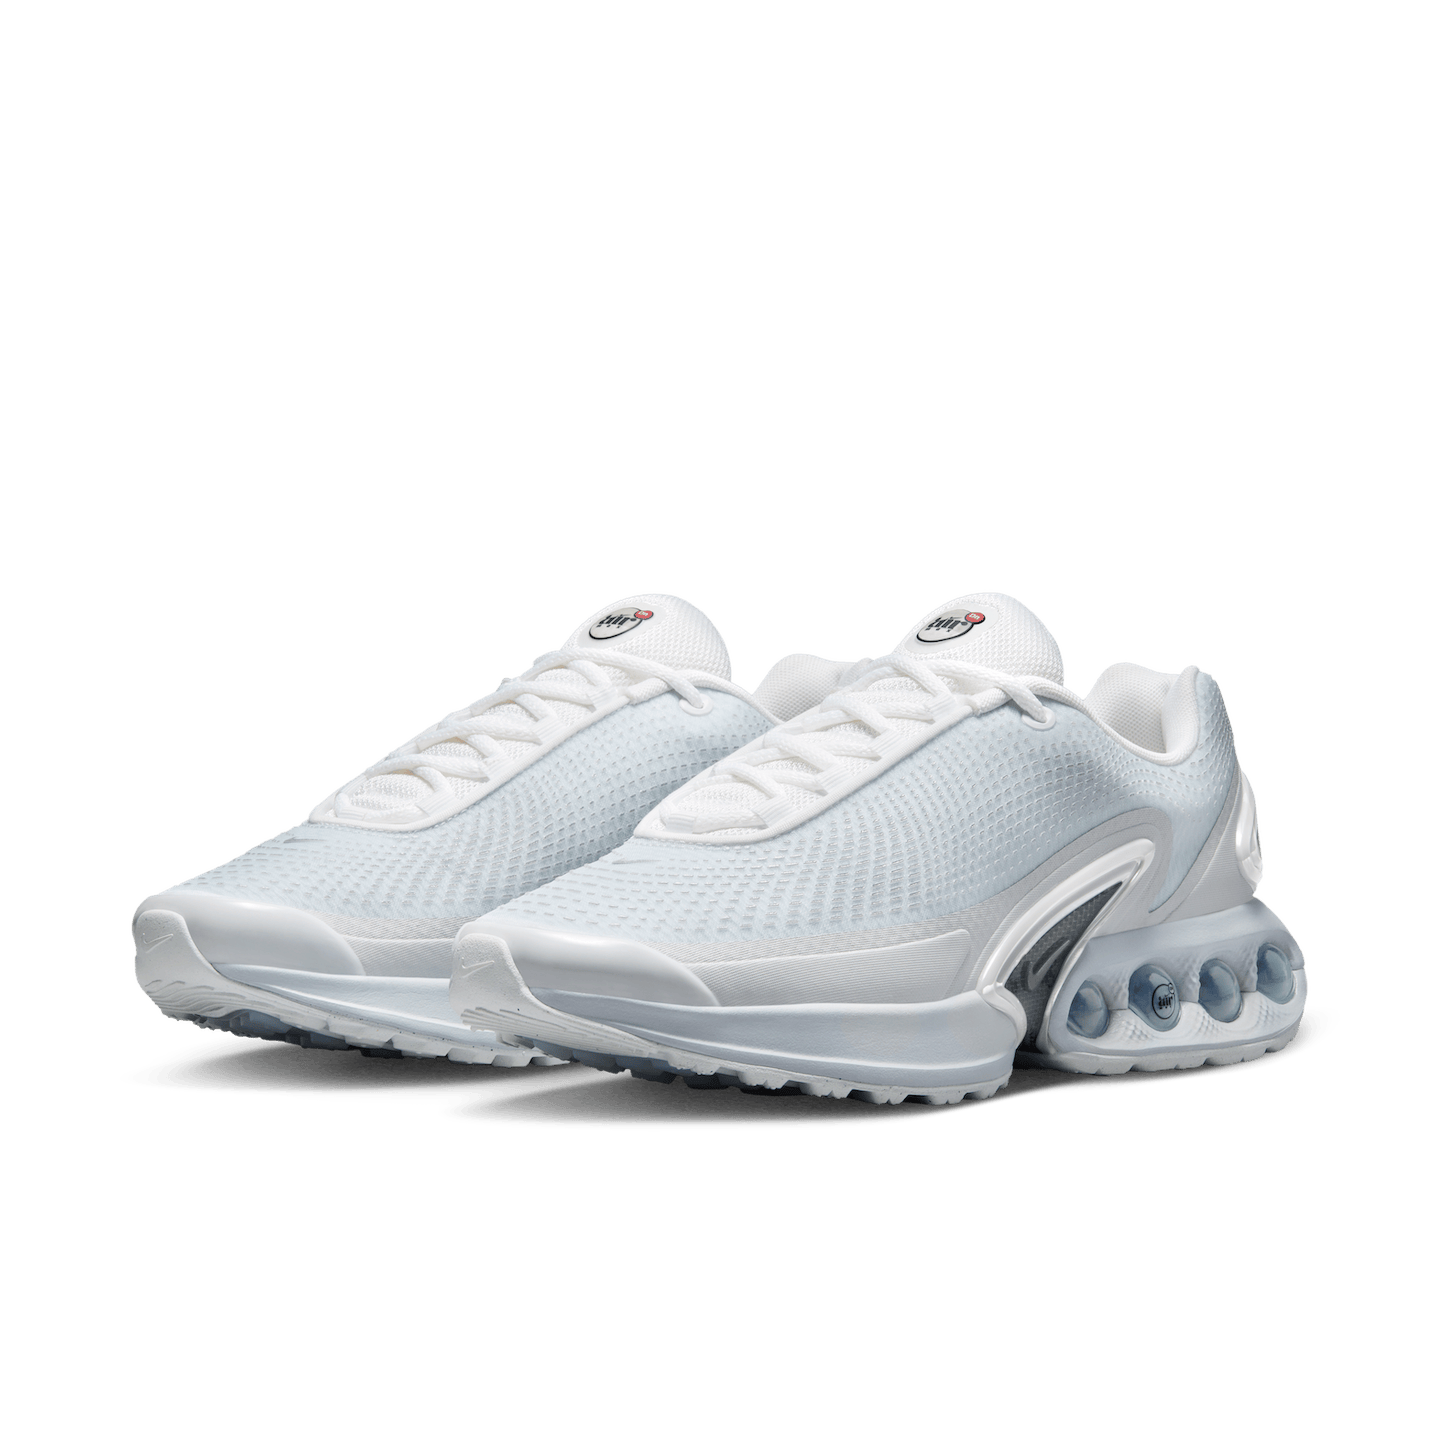 Shoe model in White Spa color